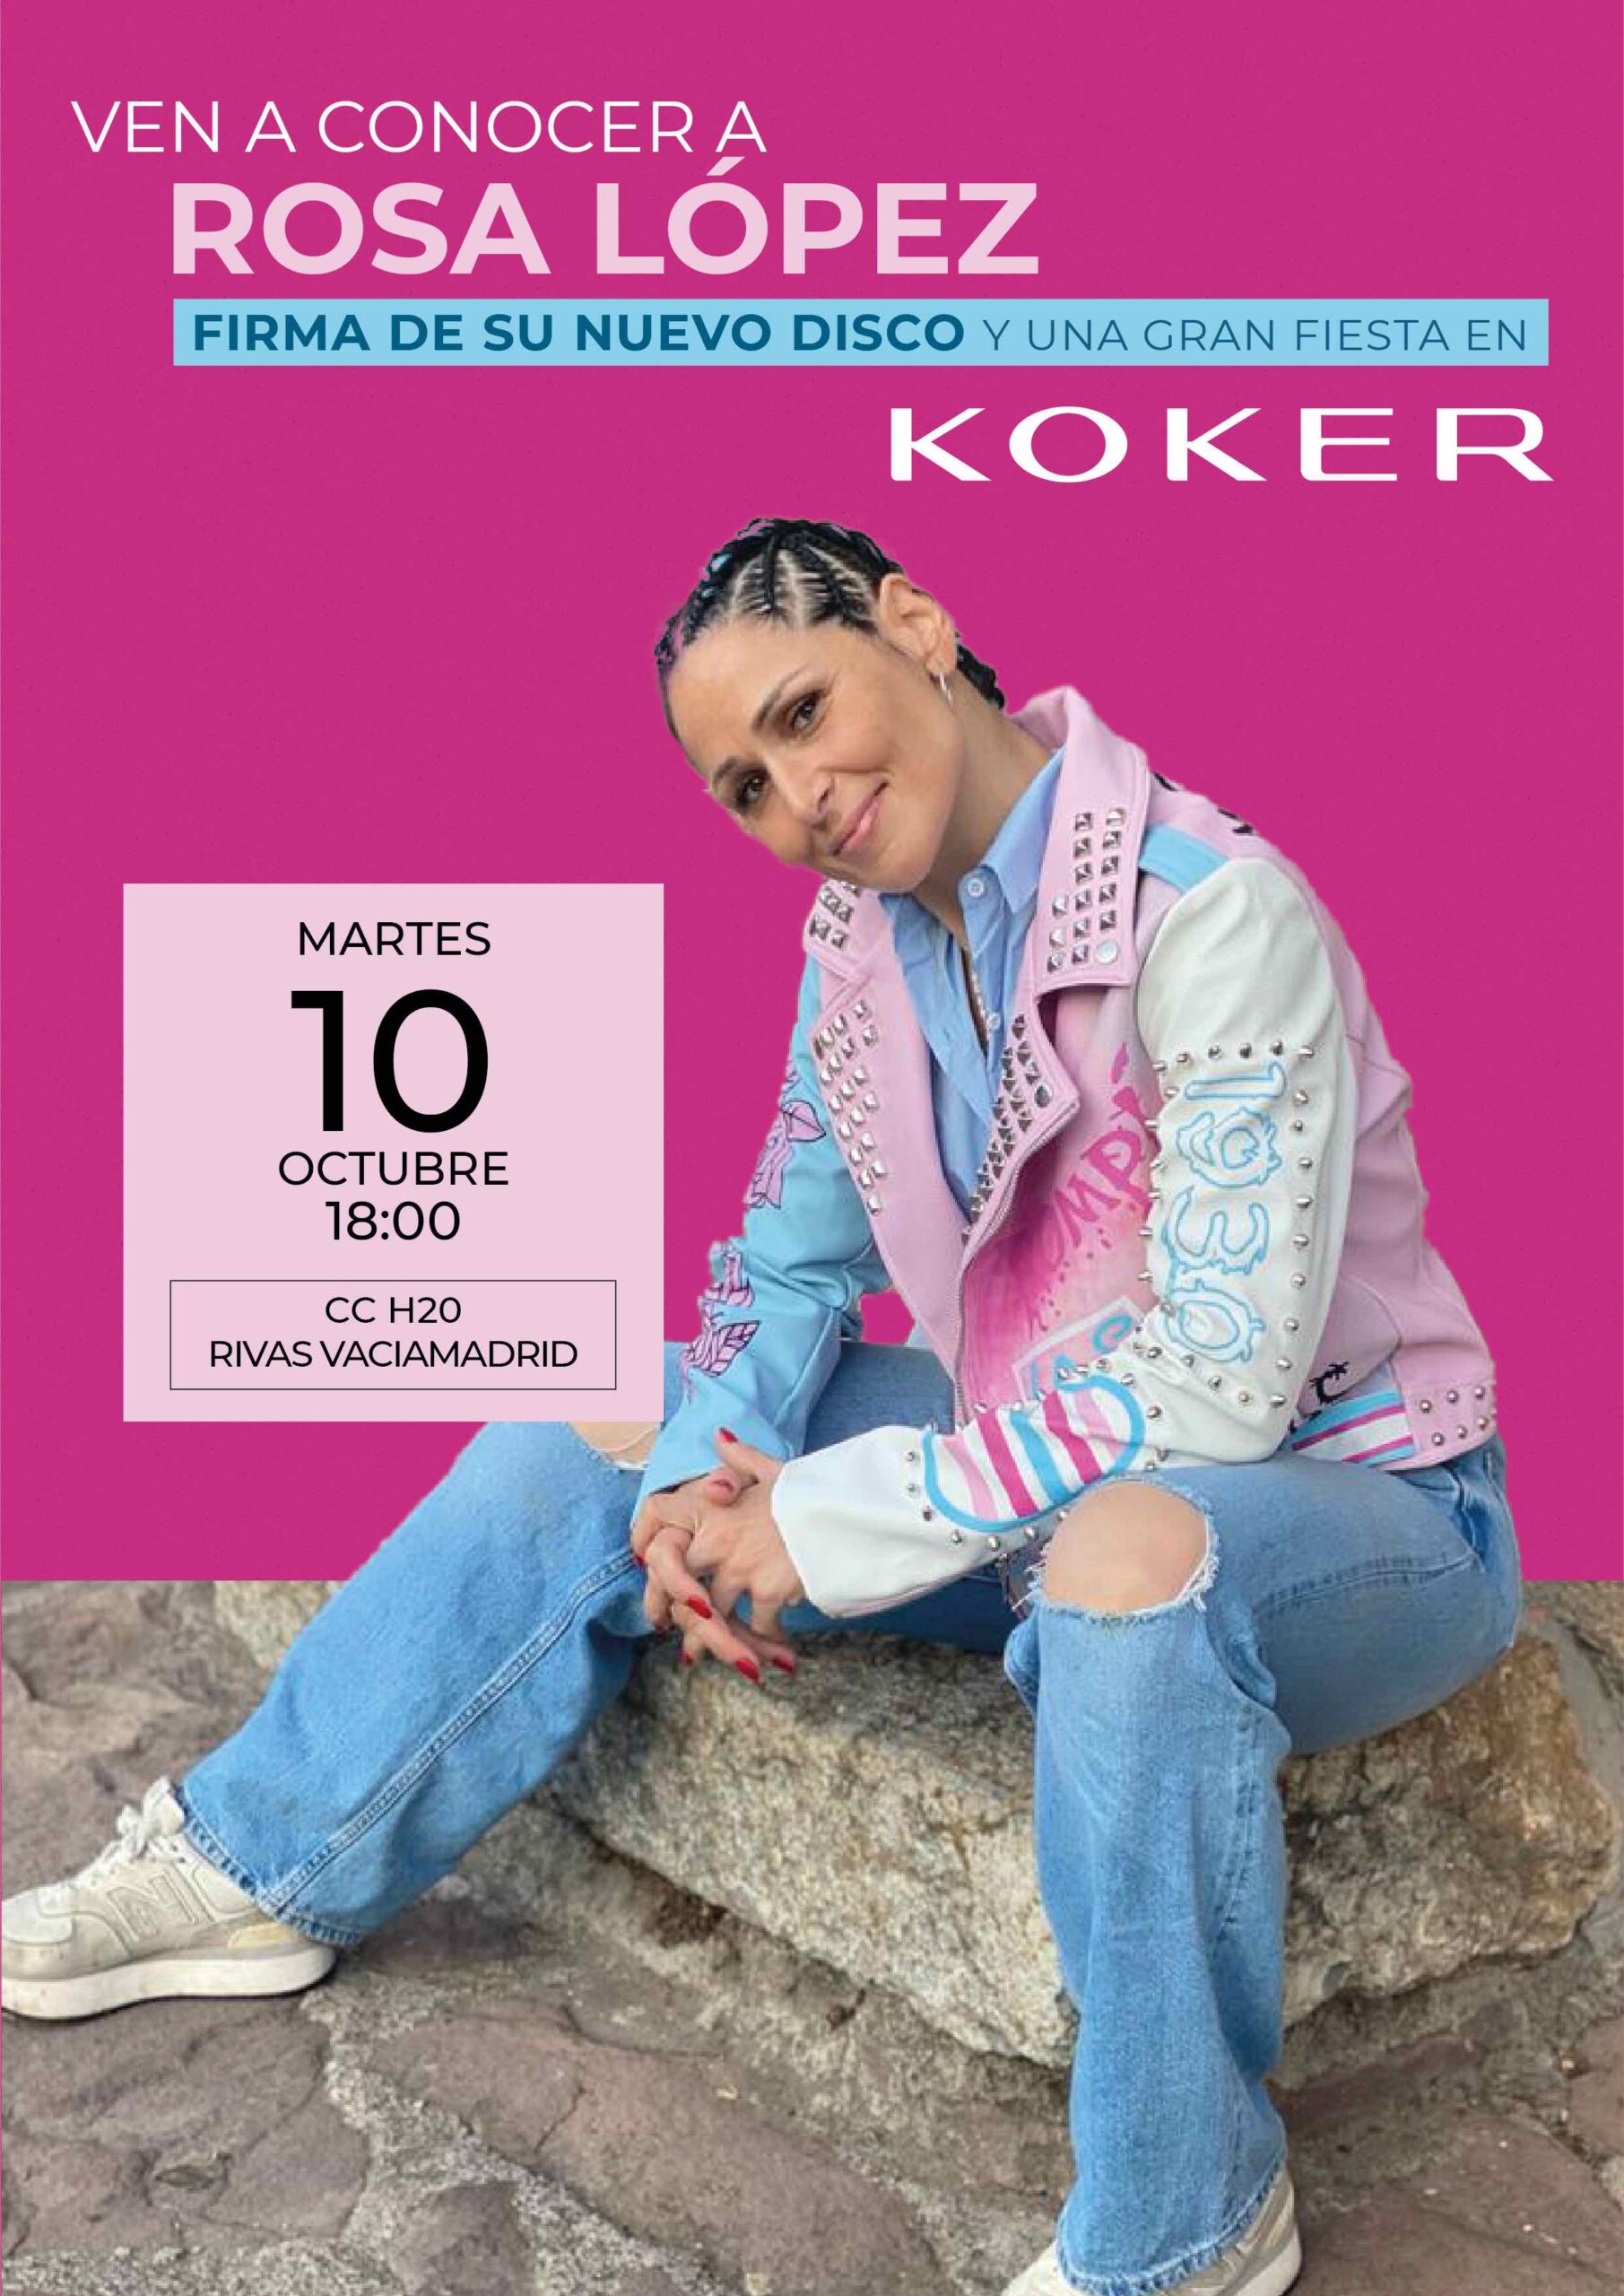 Koker y Rosa López lanzan la Biker 1930 edición limitada en apoyo a la  comunidad LGTBI - Ediciones Sibila